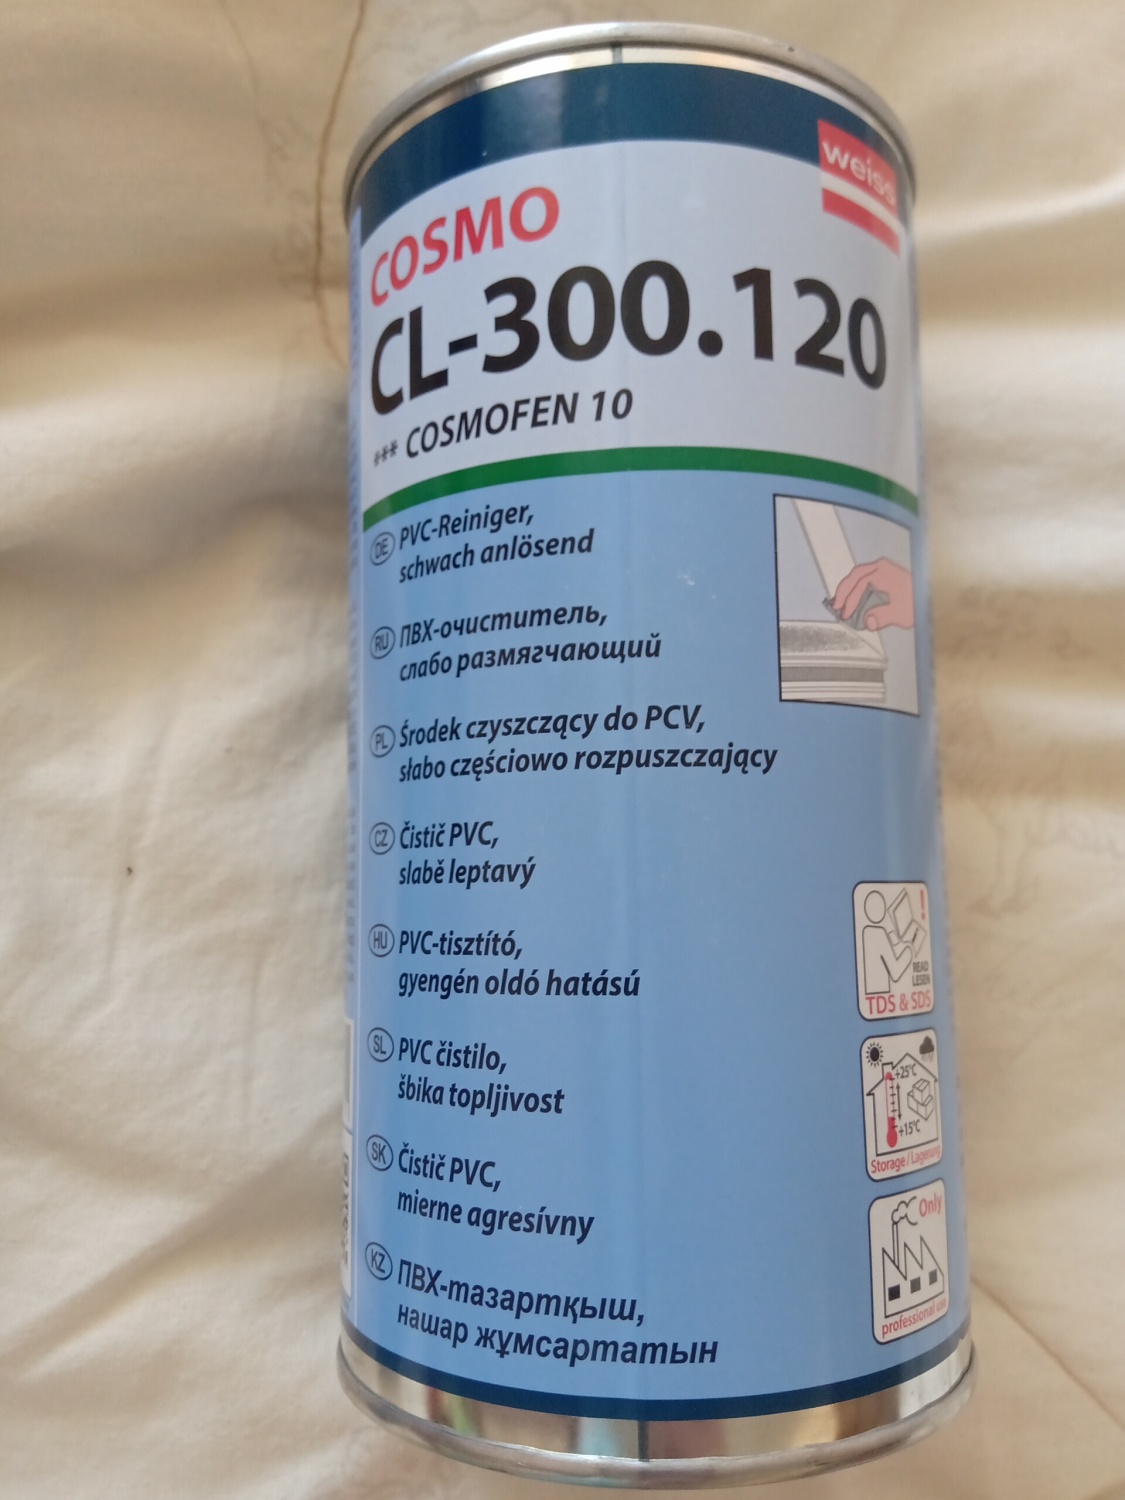 Cosmofen 10 CL-300.120 Cosmo PVC Reiniger anlösend 